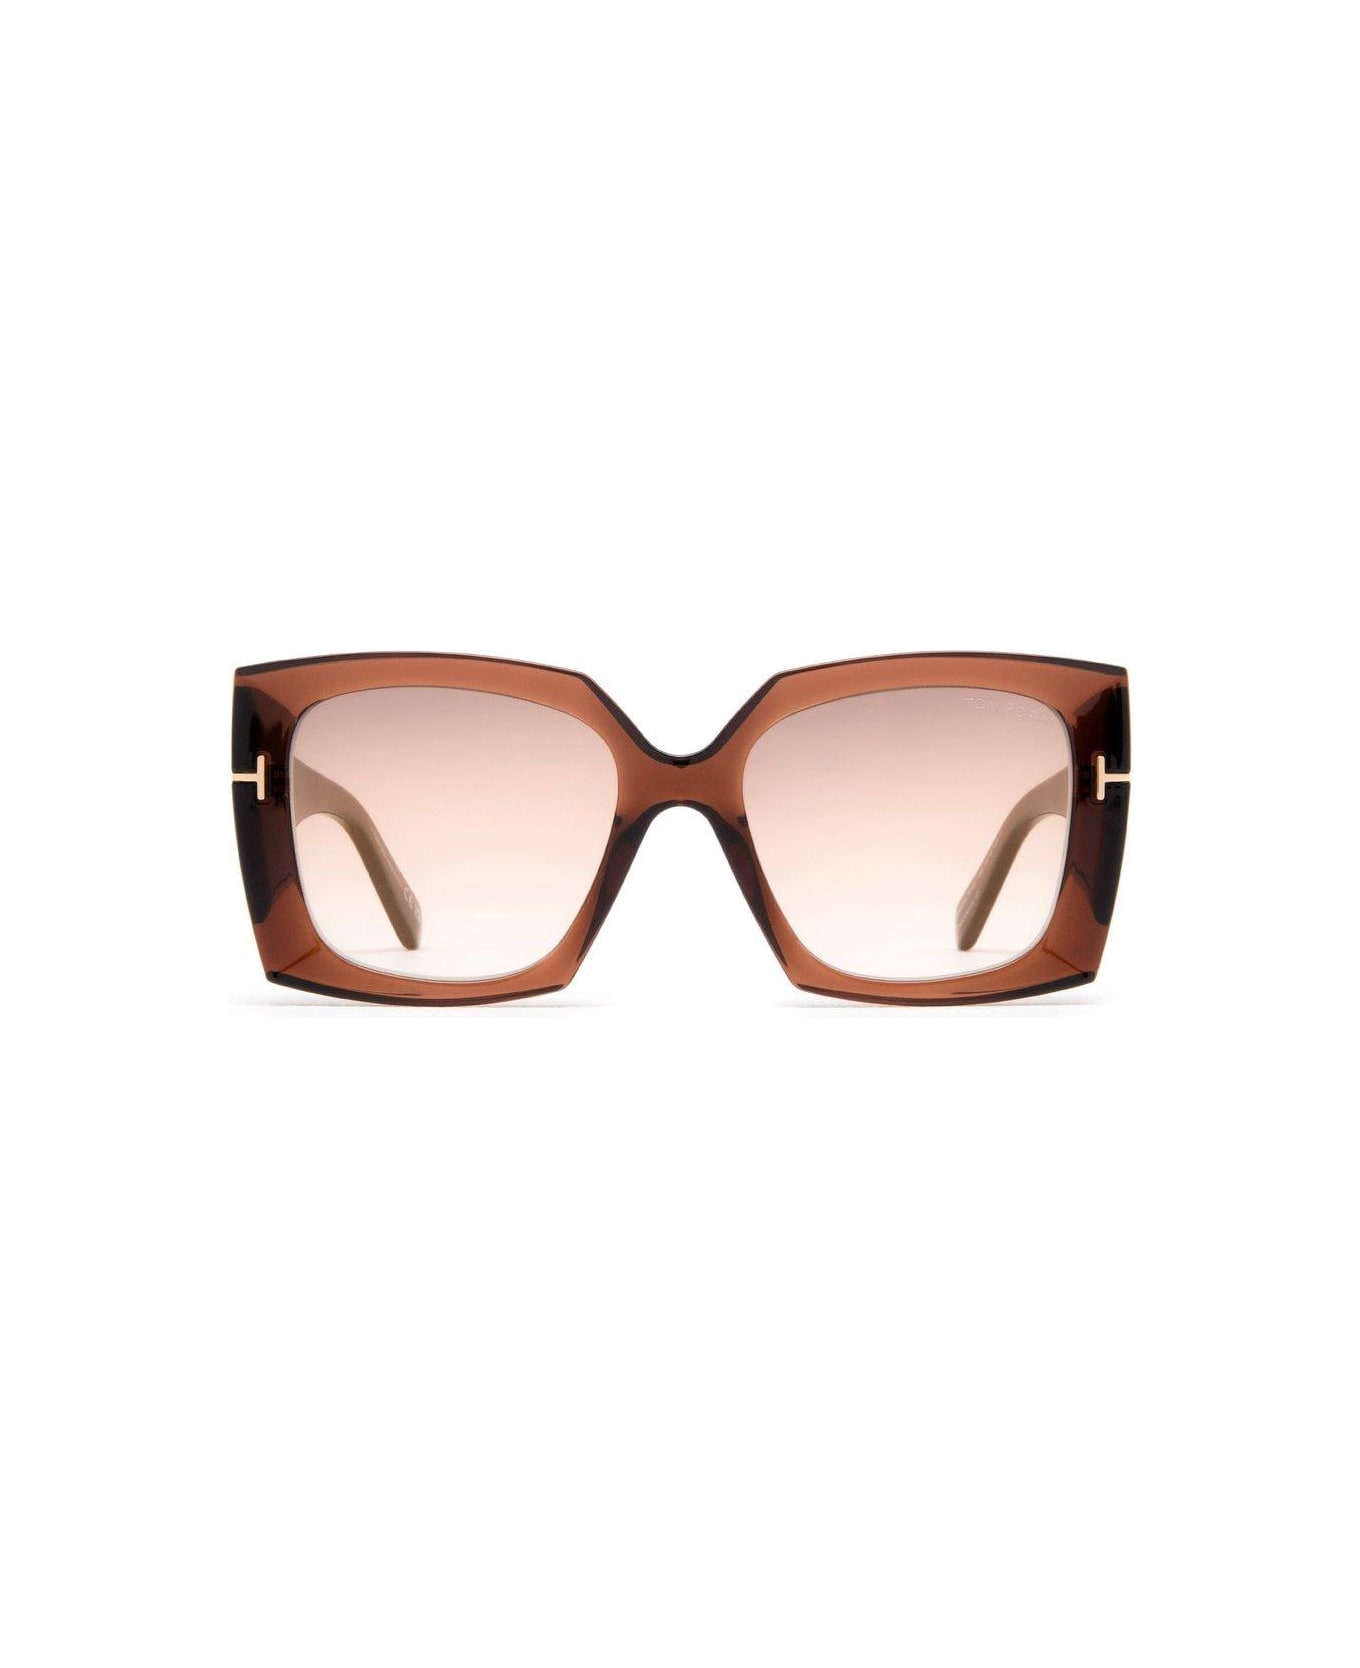 Tom Ford Eyewear Jacquetta Sunglasses Sunglasses - 48G Marrone Scuro Luc / Marrone Specchiato